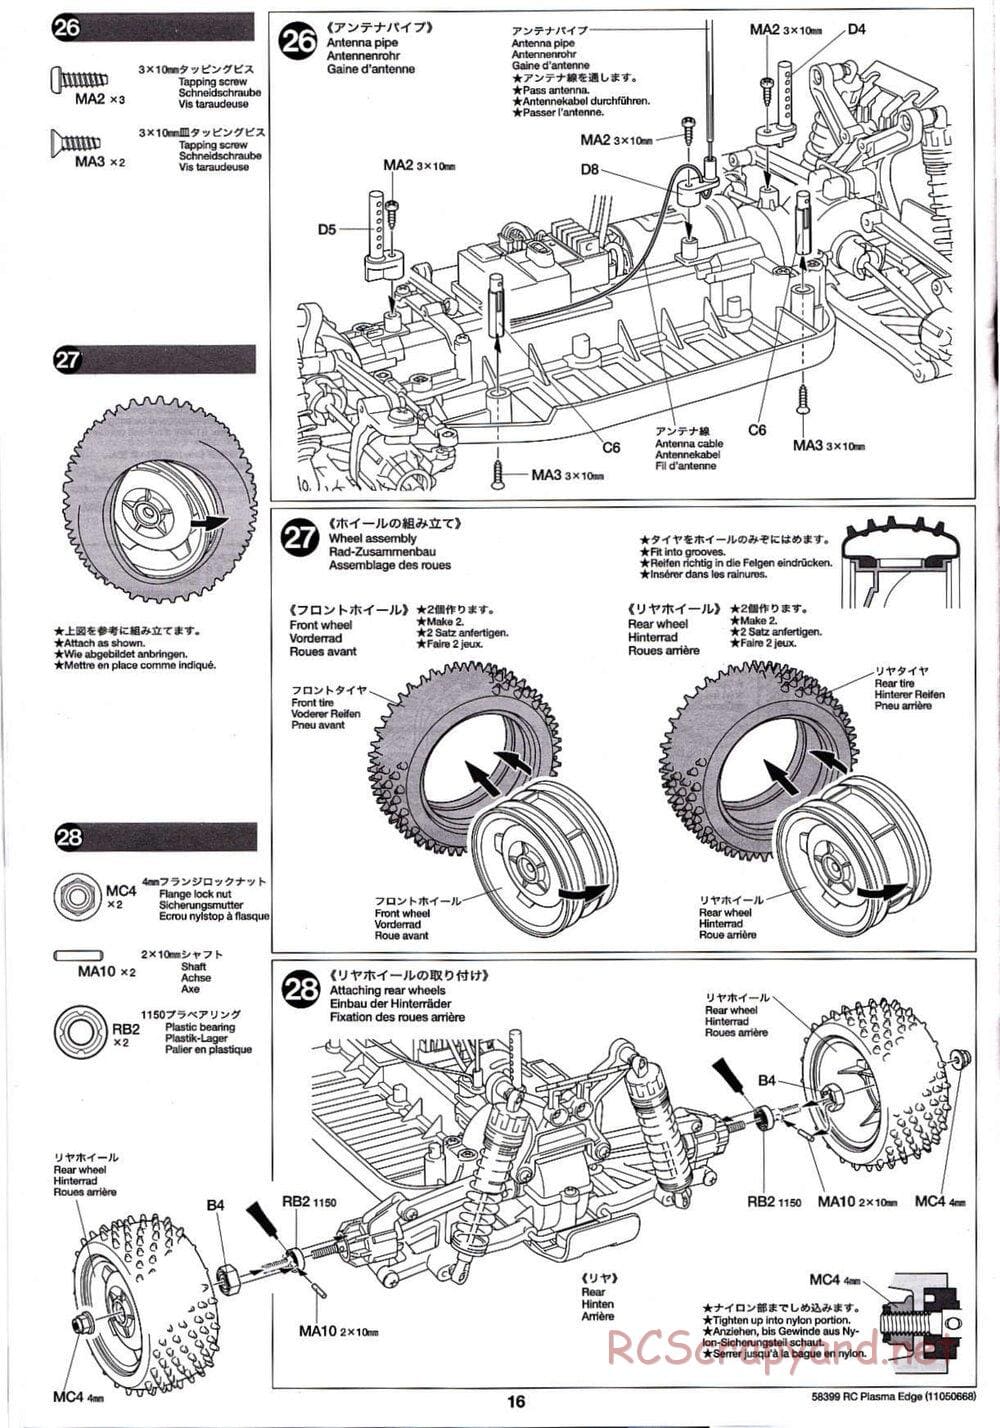 Tamiya - Plasma Edge Chassis - Manual - Page 16